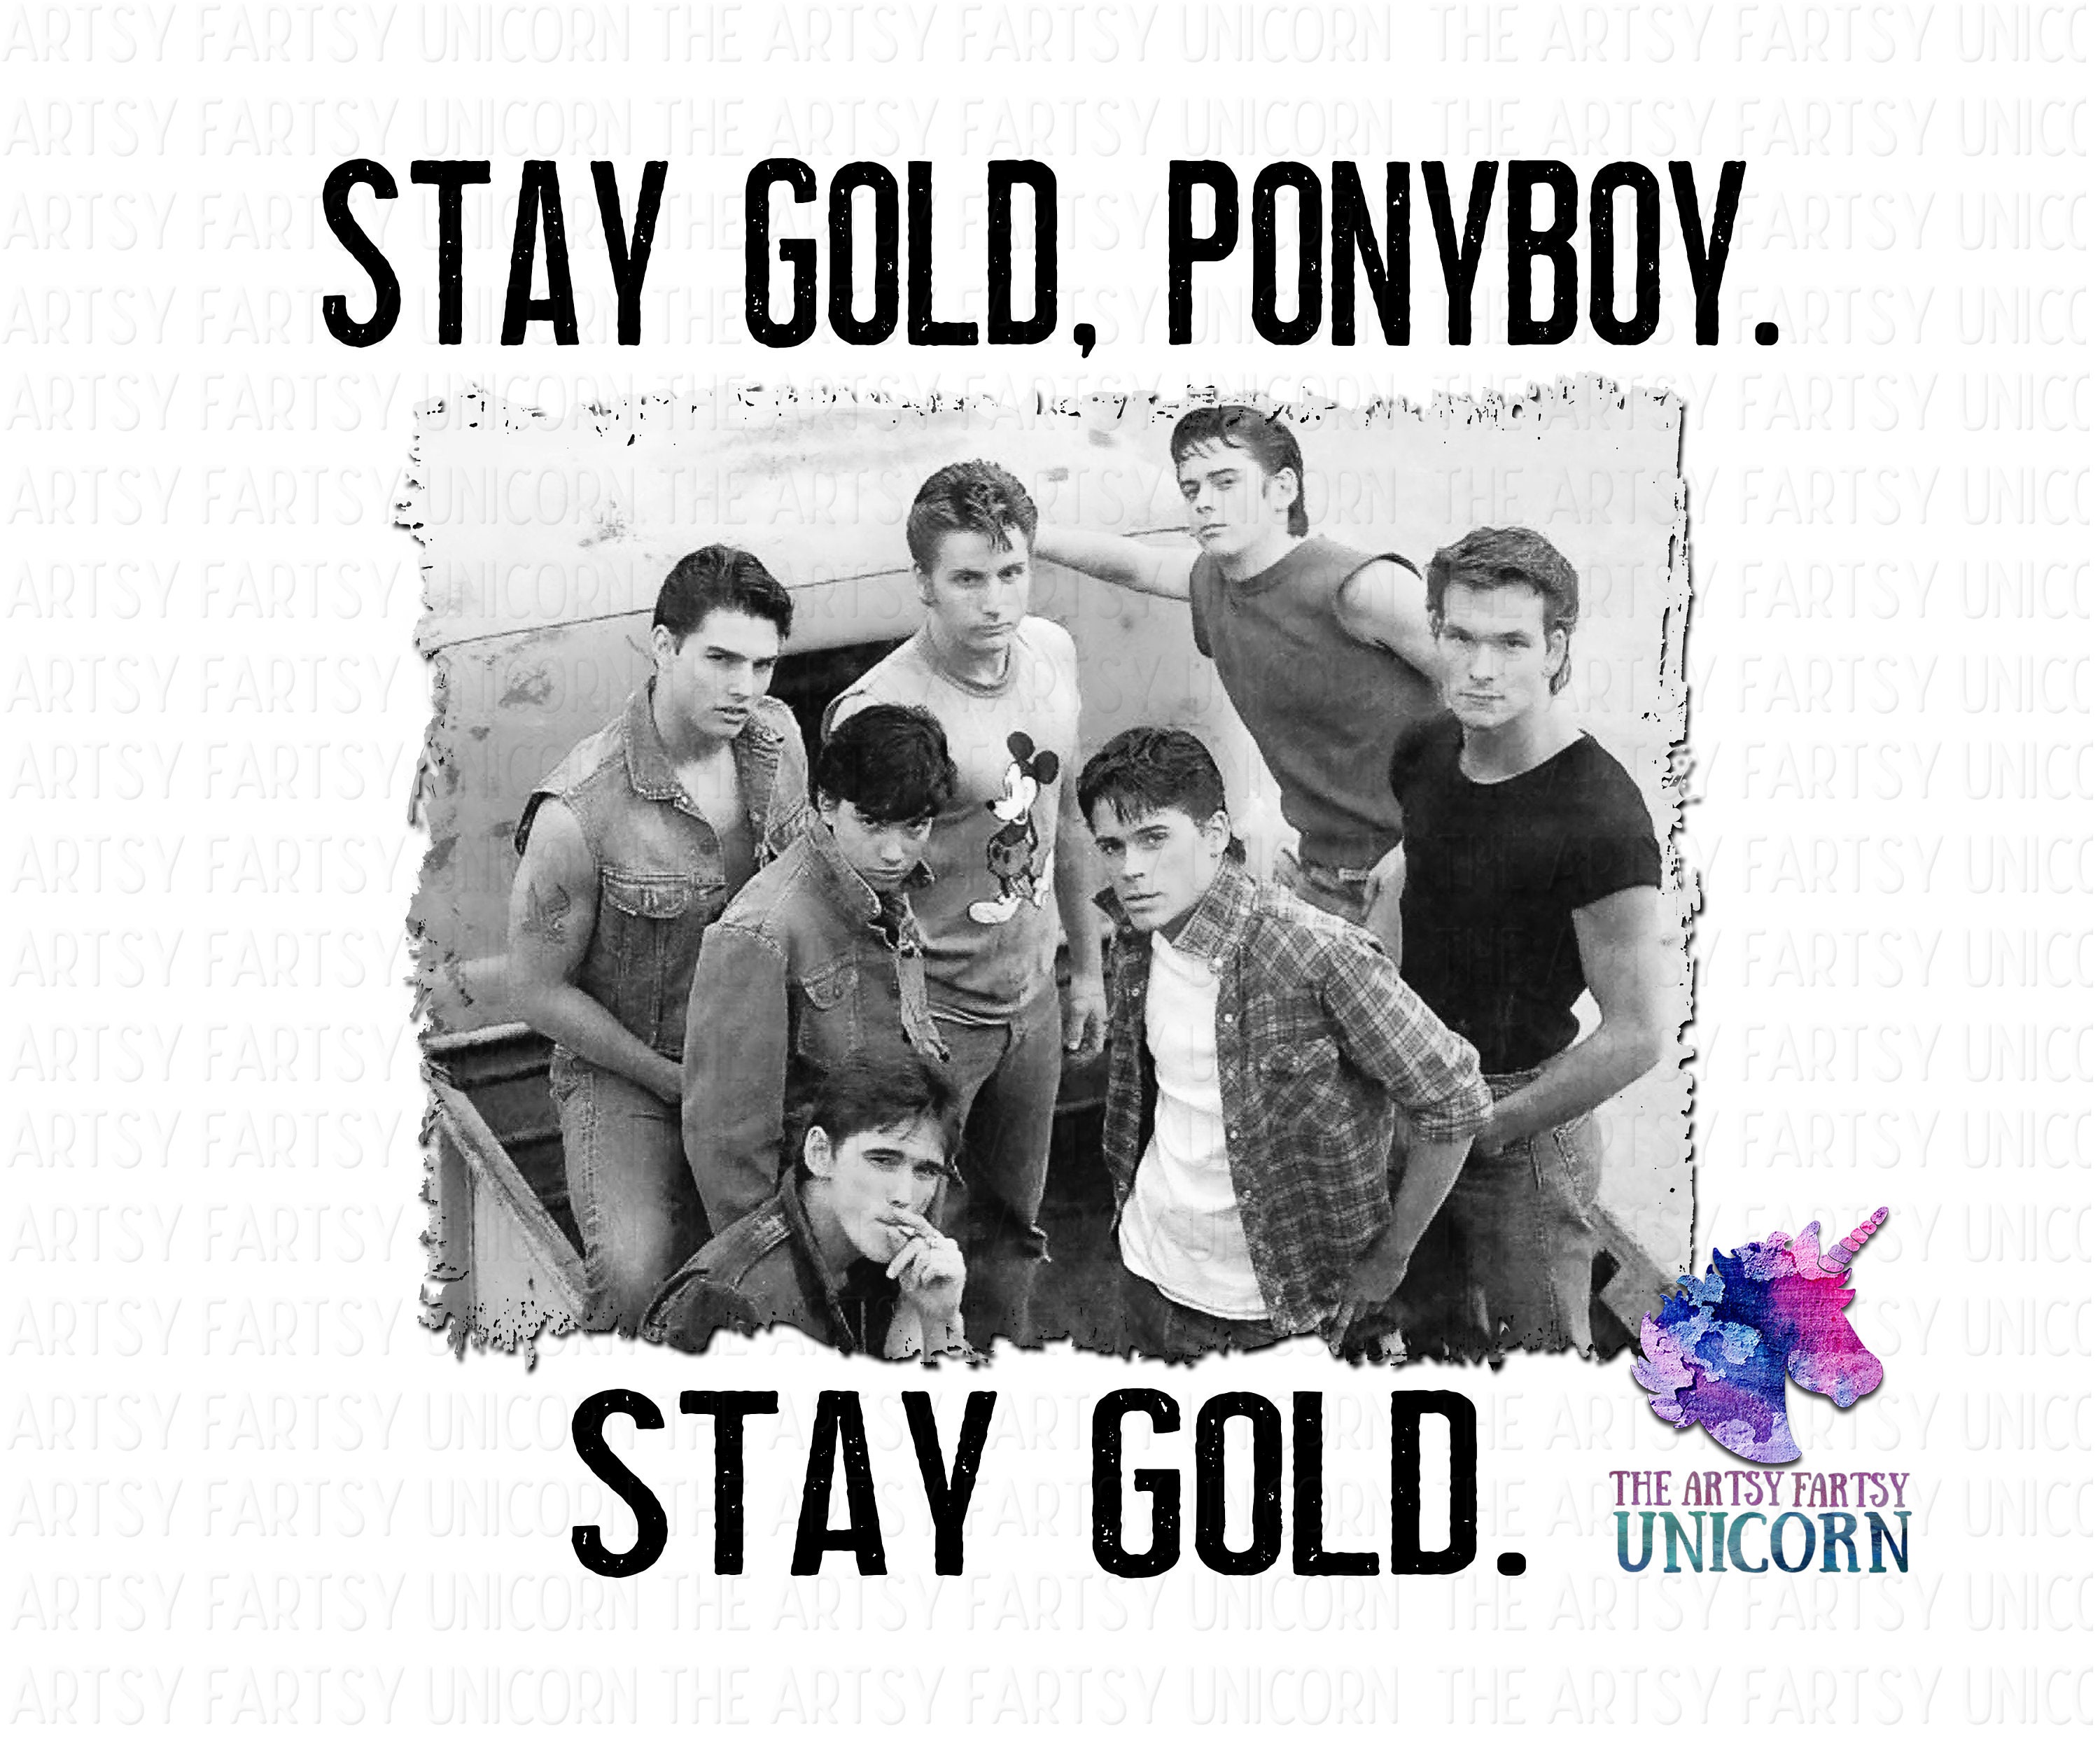 Stay Gold Ponyboy